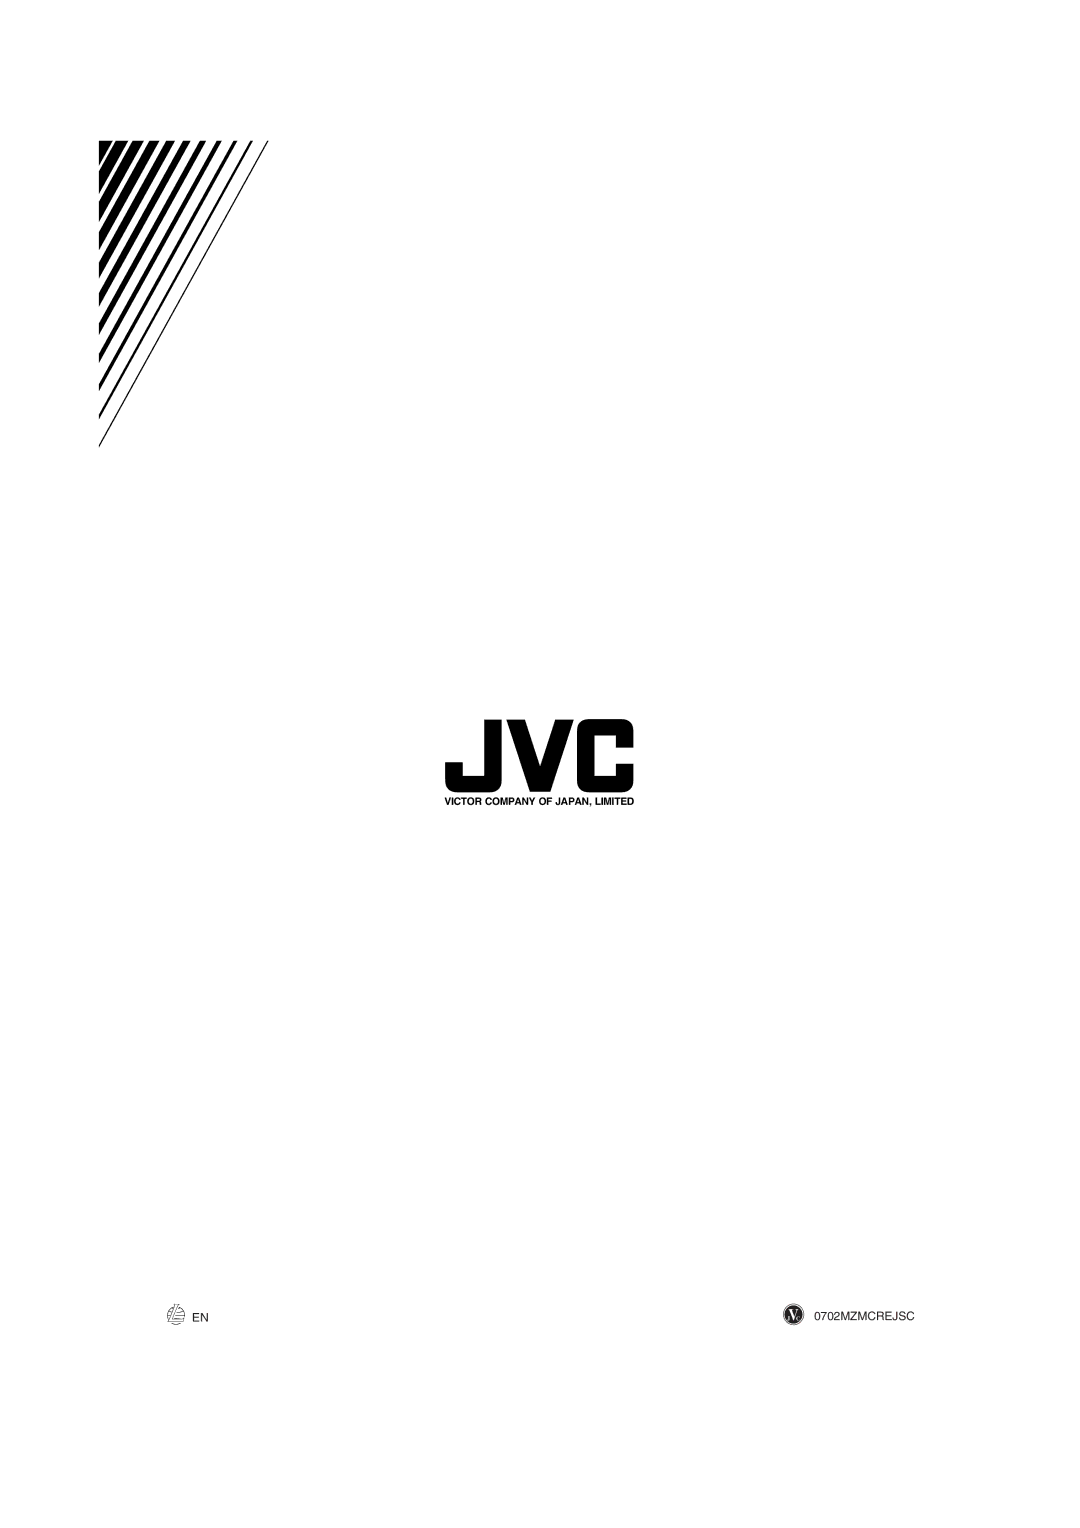 JVC XV-S400BK, XV-S402SL, XV-S300BK, XV-S302SL manual JVC 0702MZMCREJSC 